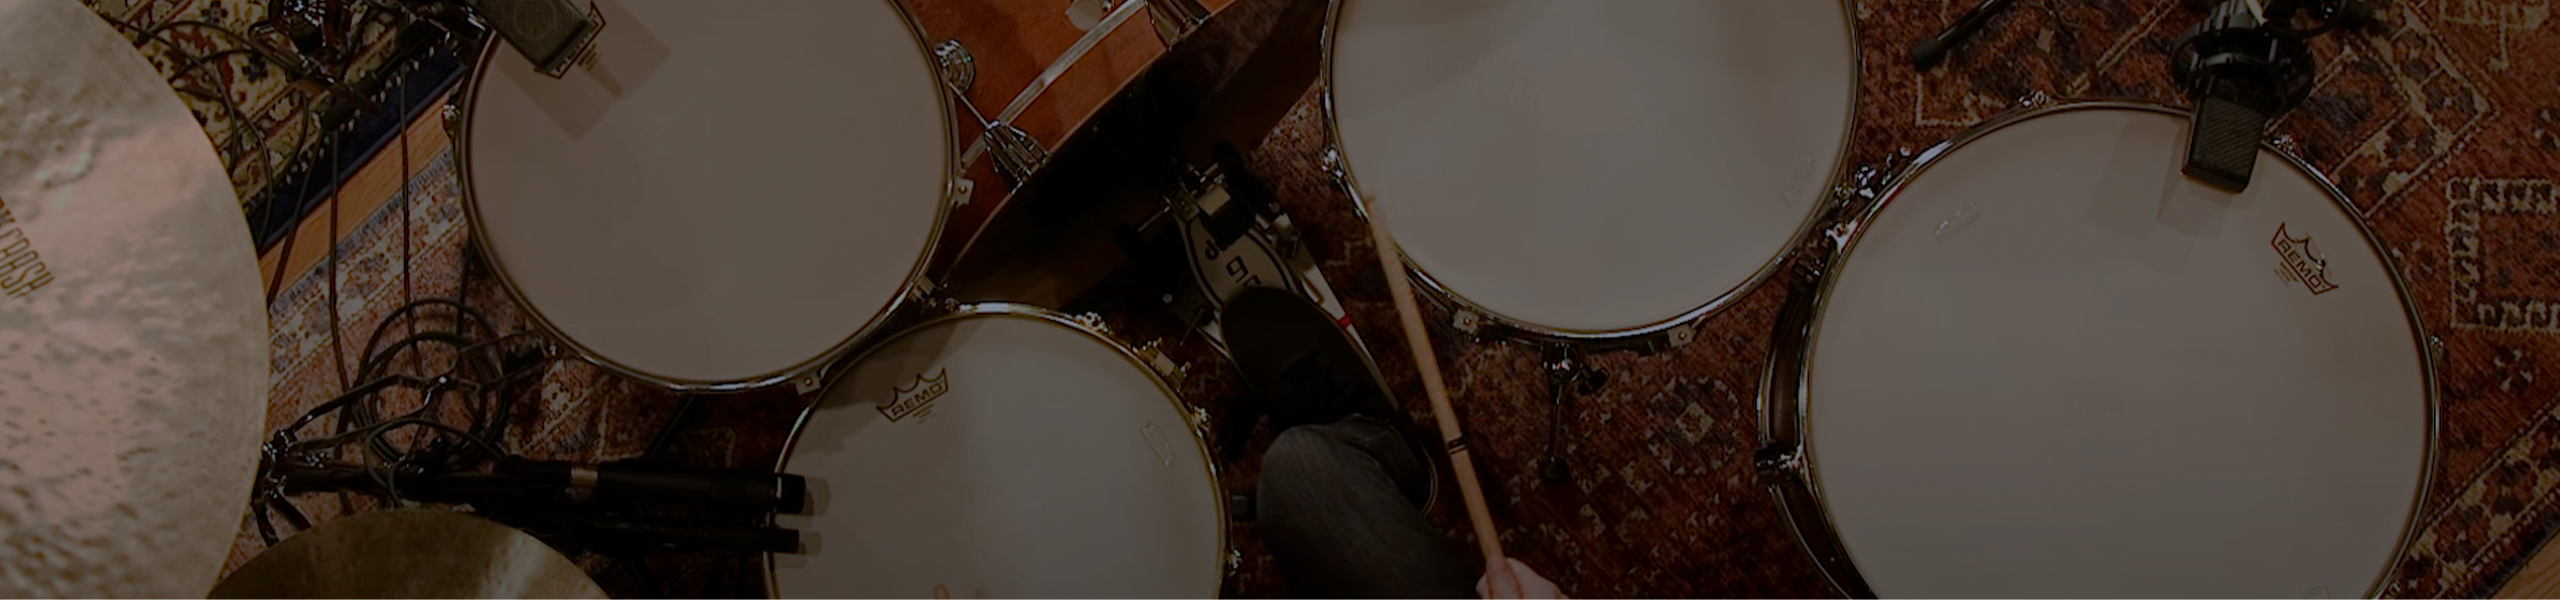 Drums Tutorials | Elevation Worship